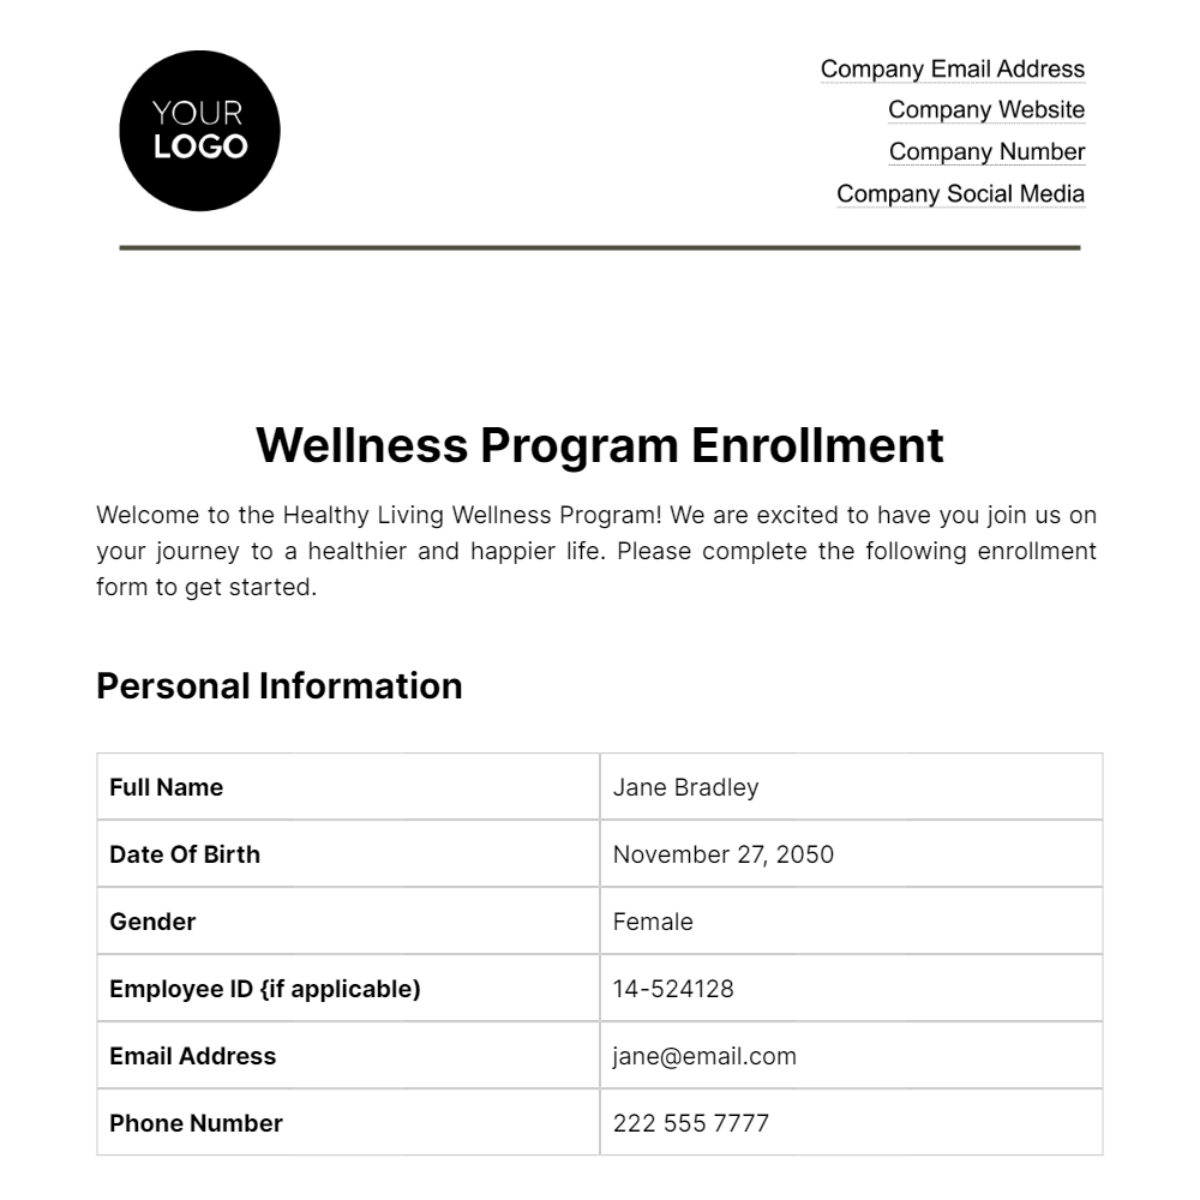 Wellness Program Enrollment HR Template